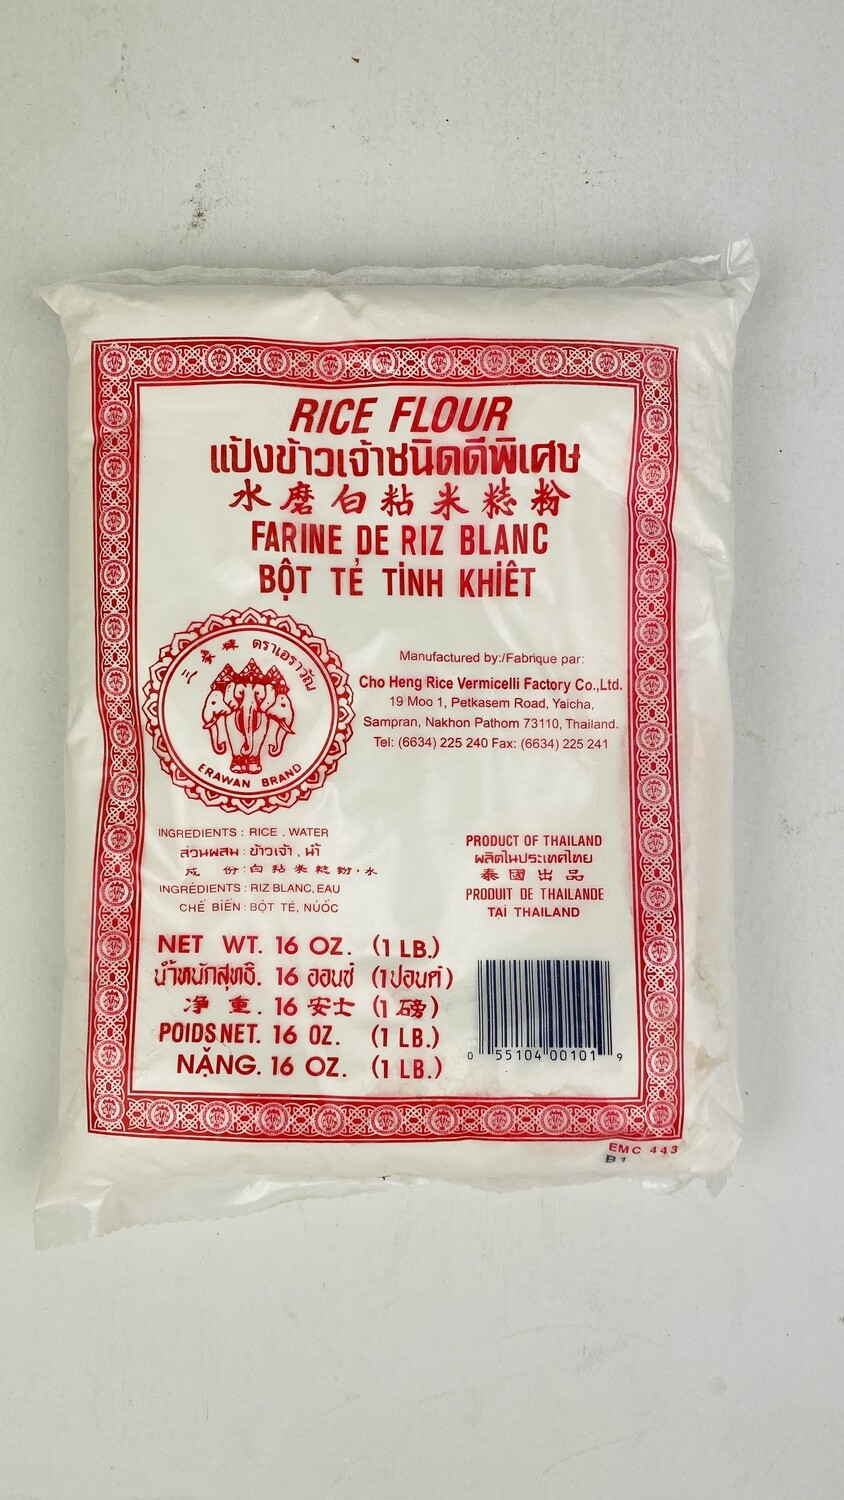 (2包) Rice Flour 1lb 三象牌水磨粘米粉